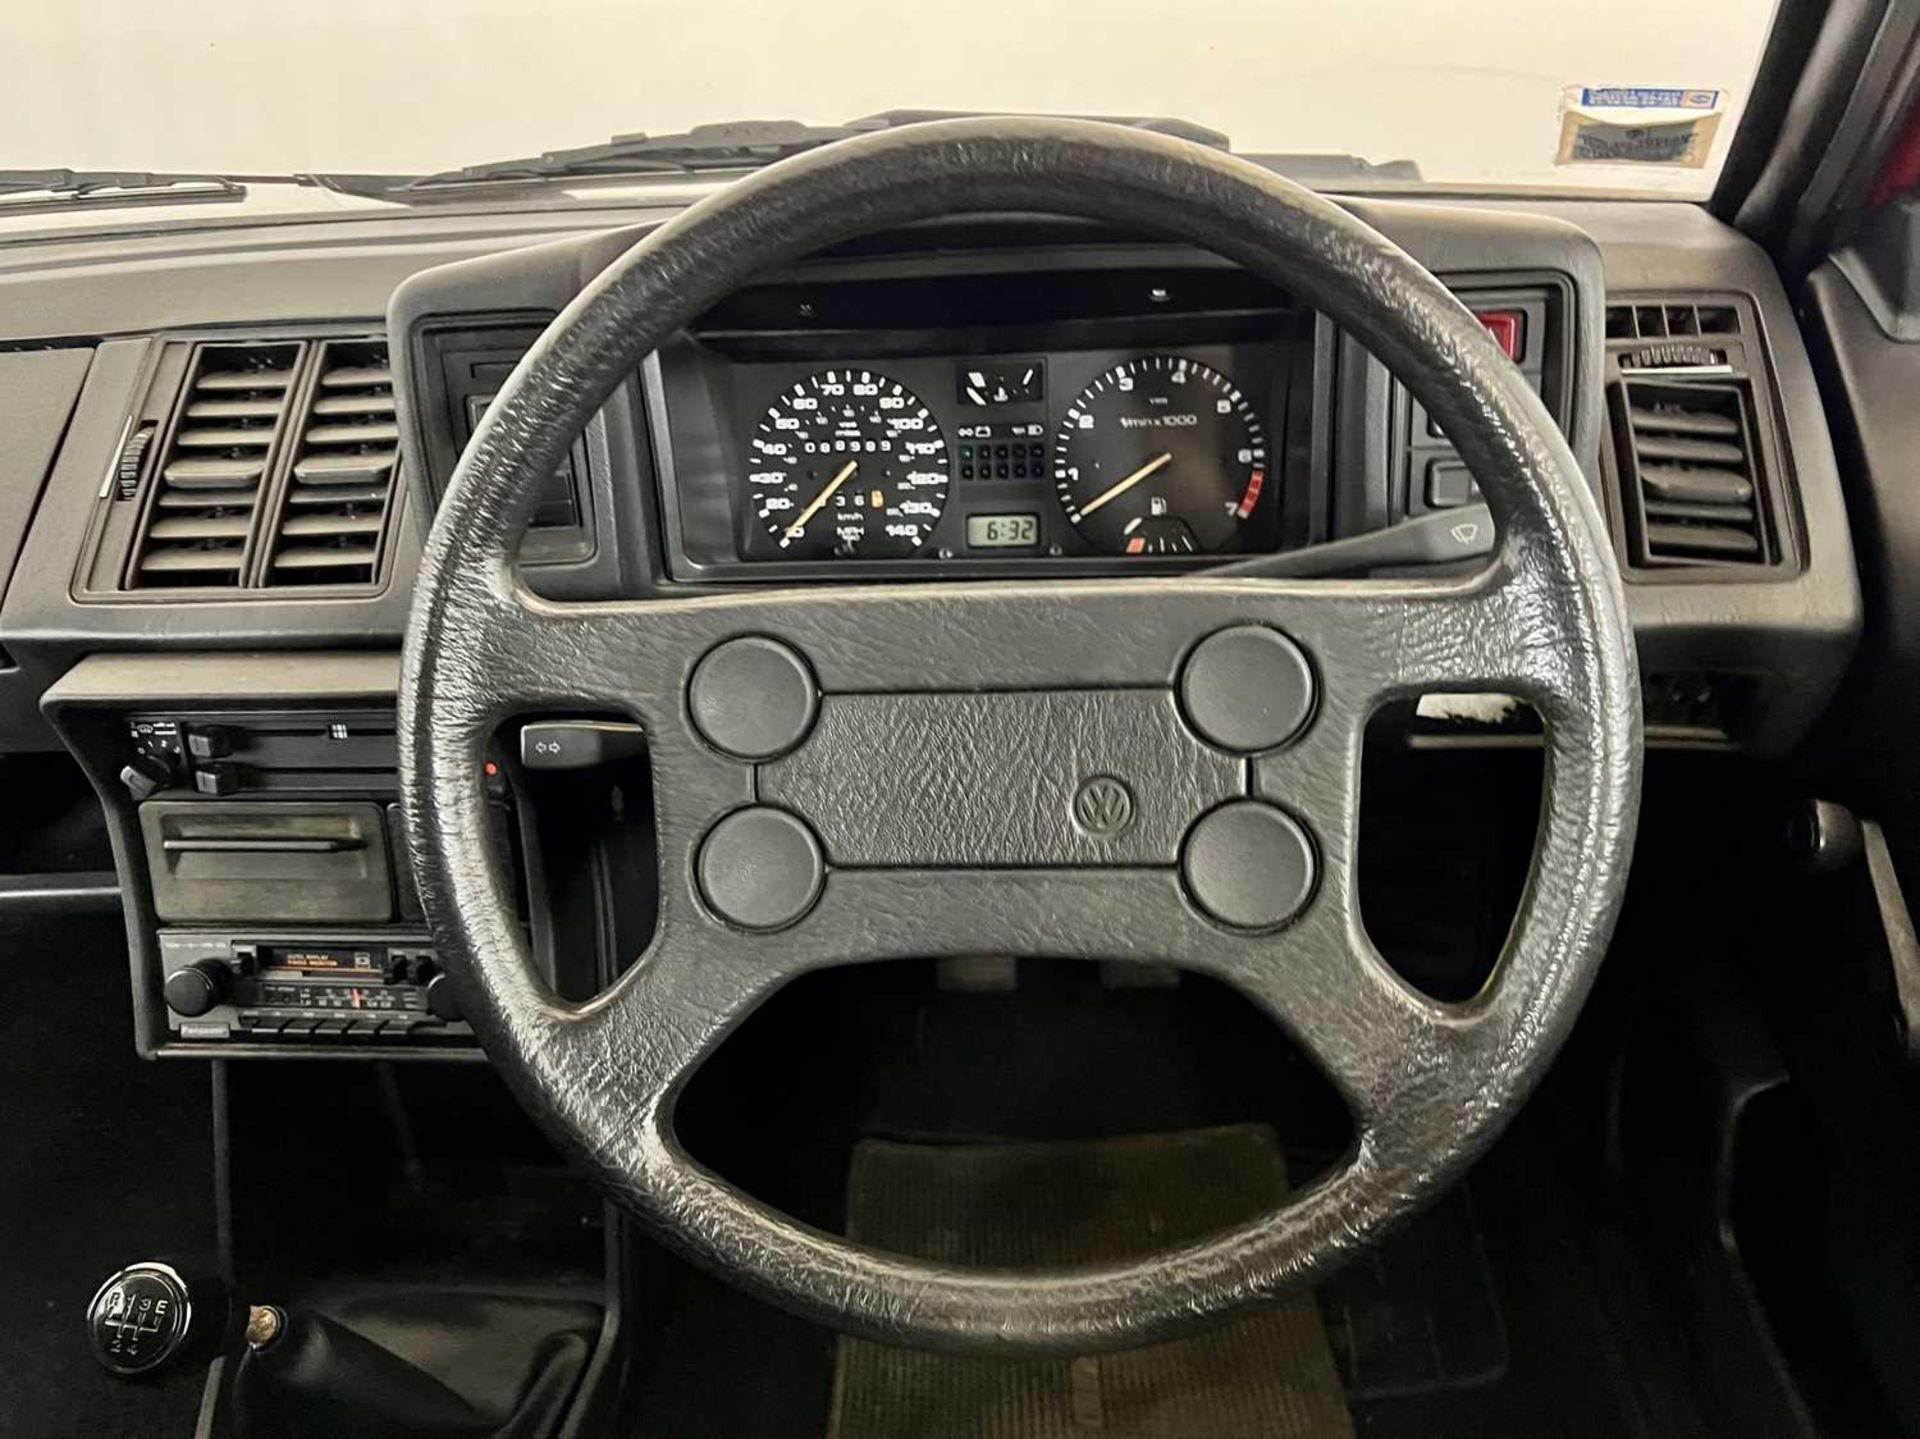 1985 Volkswagen Scirocco GTS - Image 26 of 30